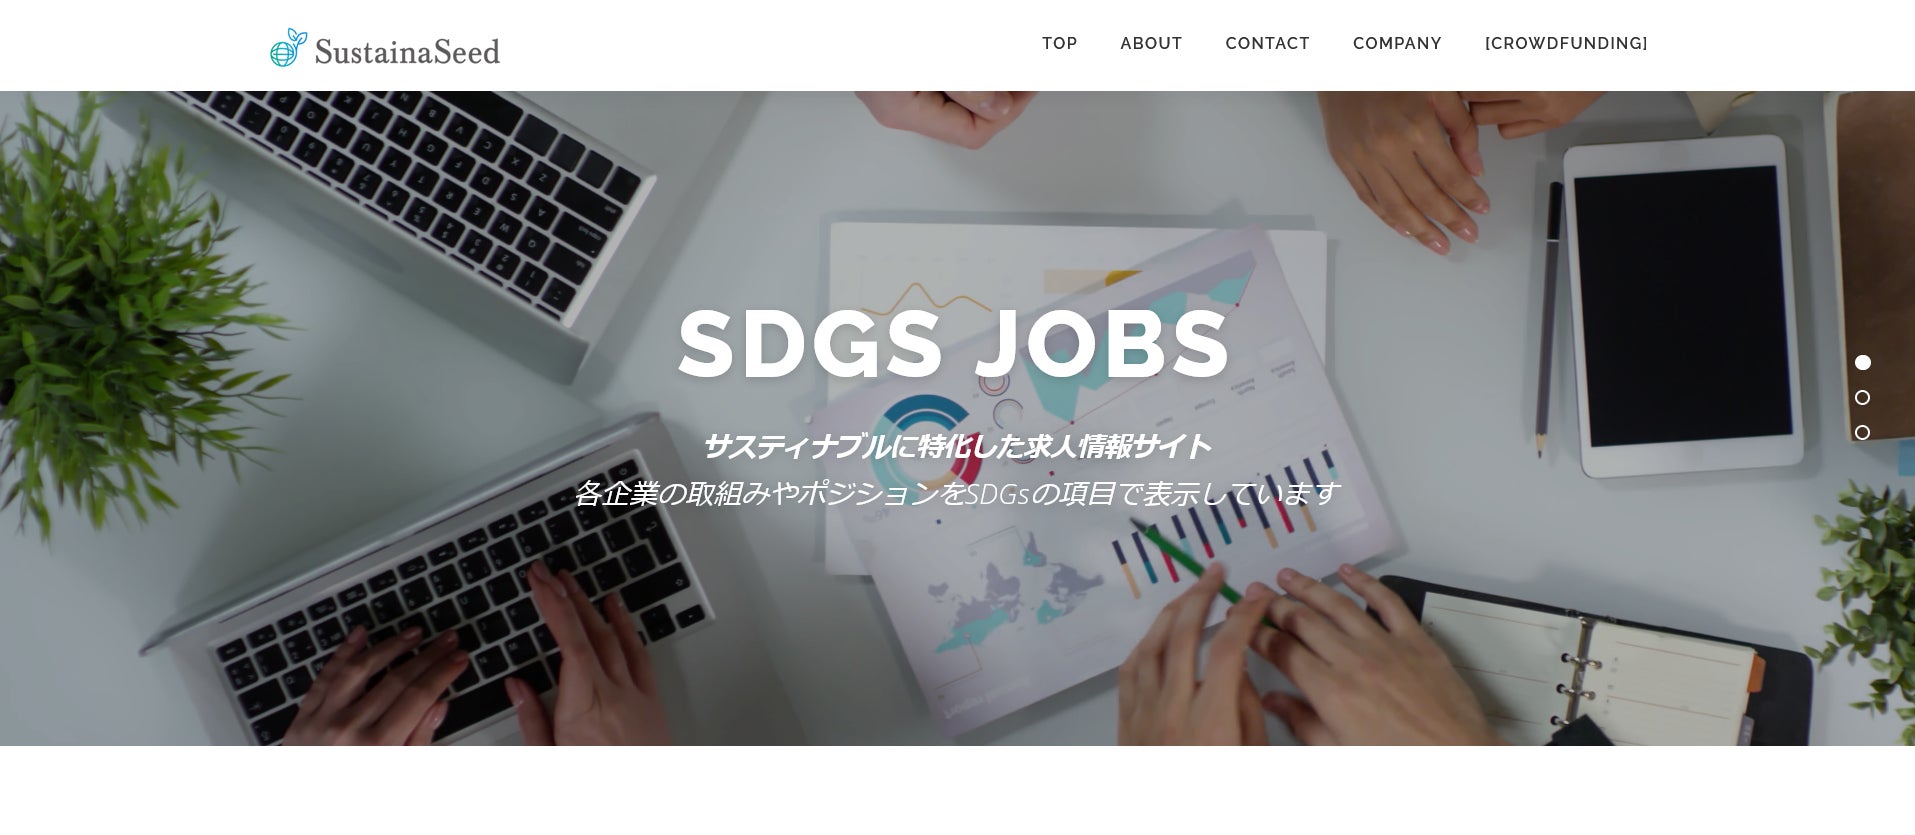 サスティナブルを応援する「サスティナシード」がSDGsに特化した求人サイトSDGs Jobsをテストリリース。のサブ画像1